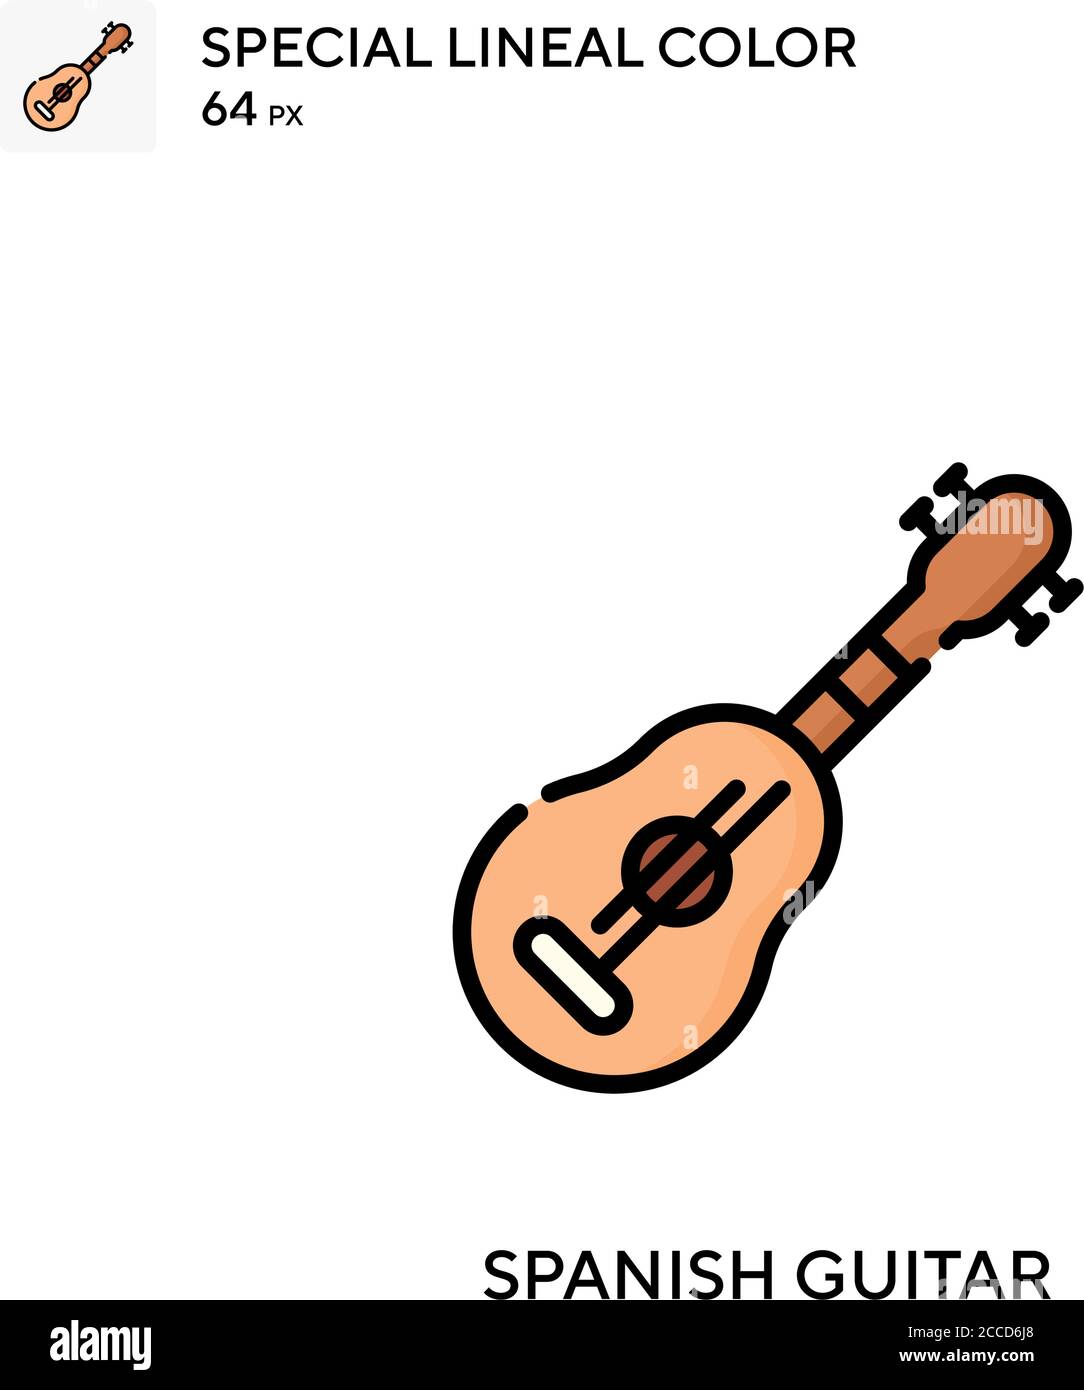 Guitare espagnole icône de couleur de ligne spéciale. Modèle de conception  de symbole d'illustration pour élément d'interface utilisateur Web mobile.  Pictogramme moderne de couleur parfaite sur le St modifiable Image  Vectorielle Stock -